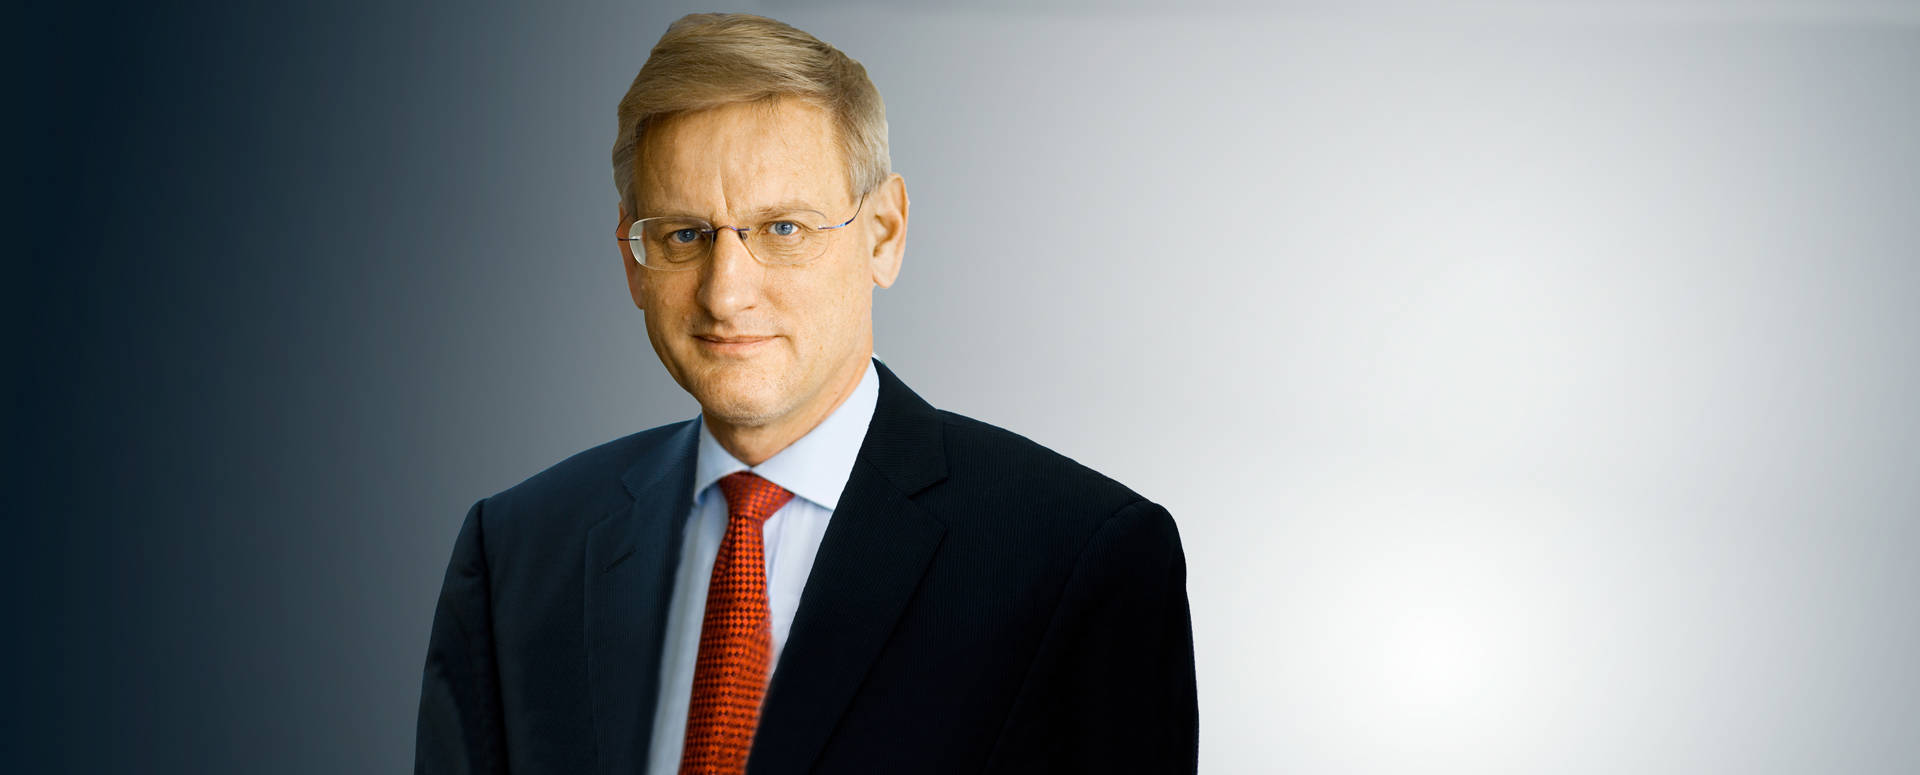 Carl  Bildt